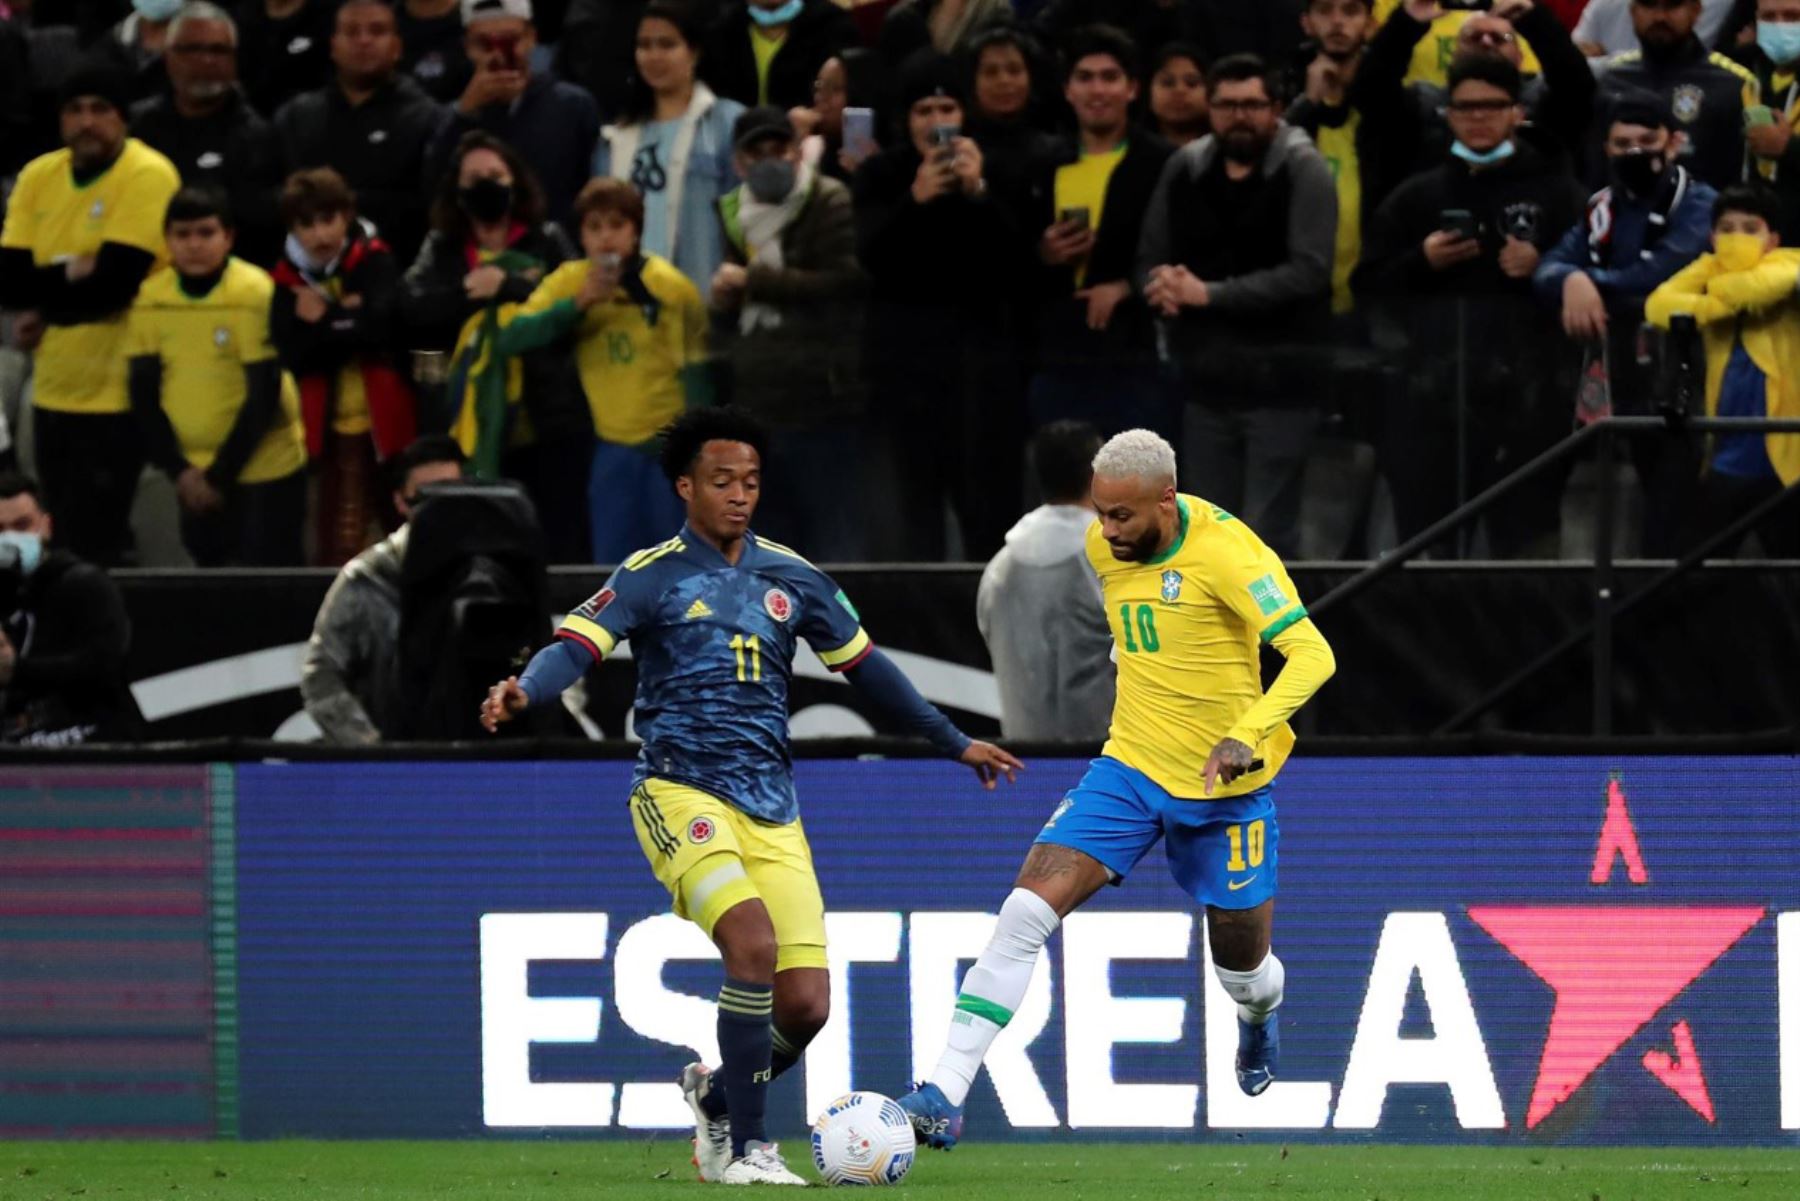 Portada: Brasil gana 1 a 0 a Colombia y mantiene su invicto en las clasificatorias sudamericanas